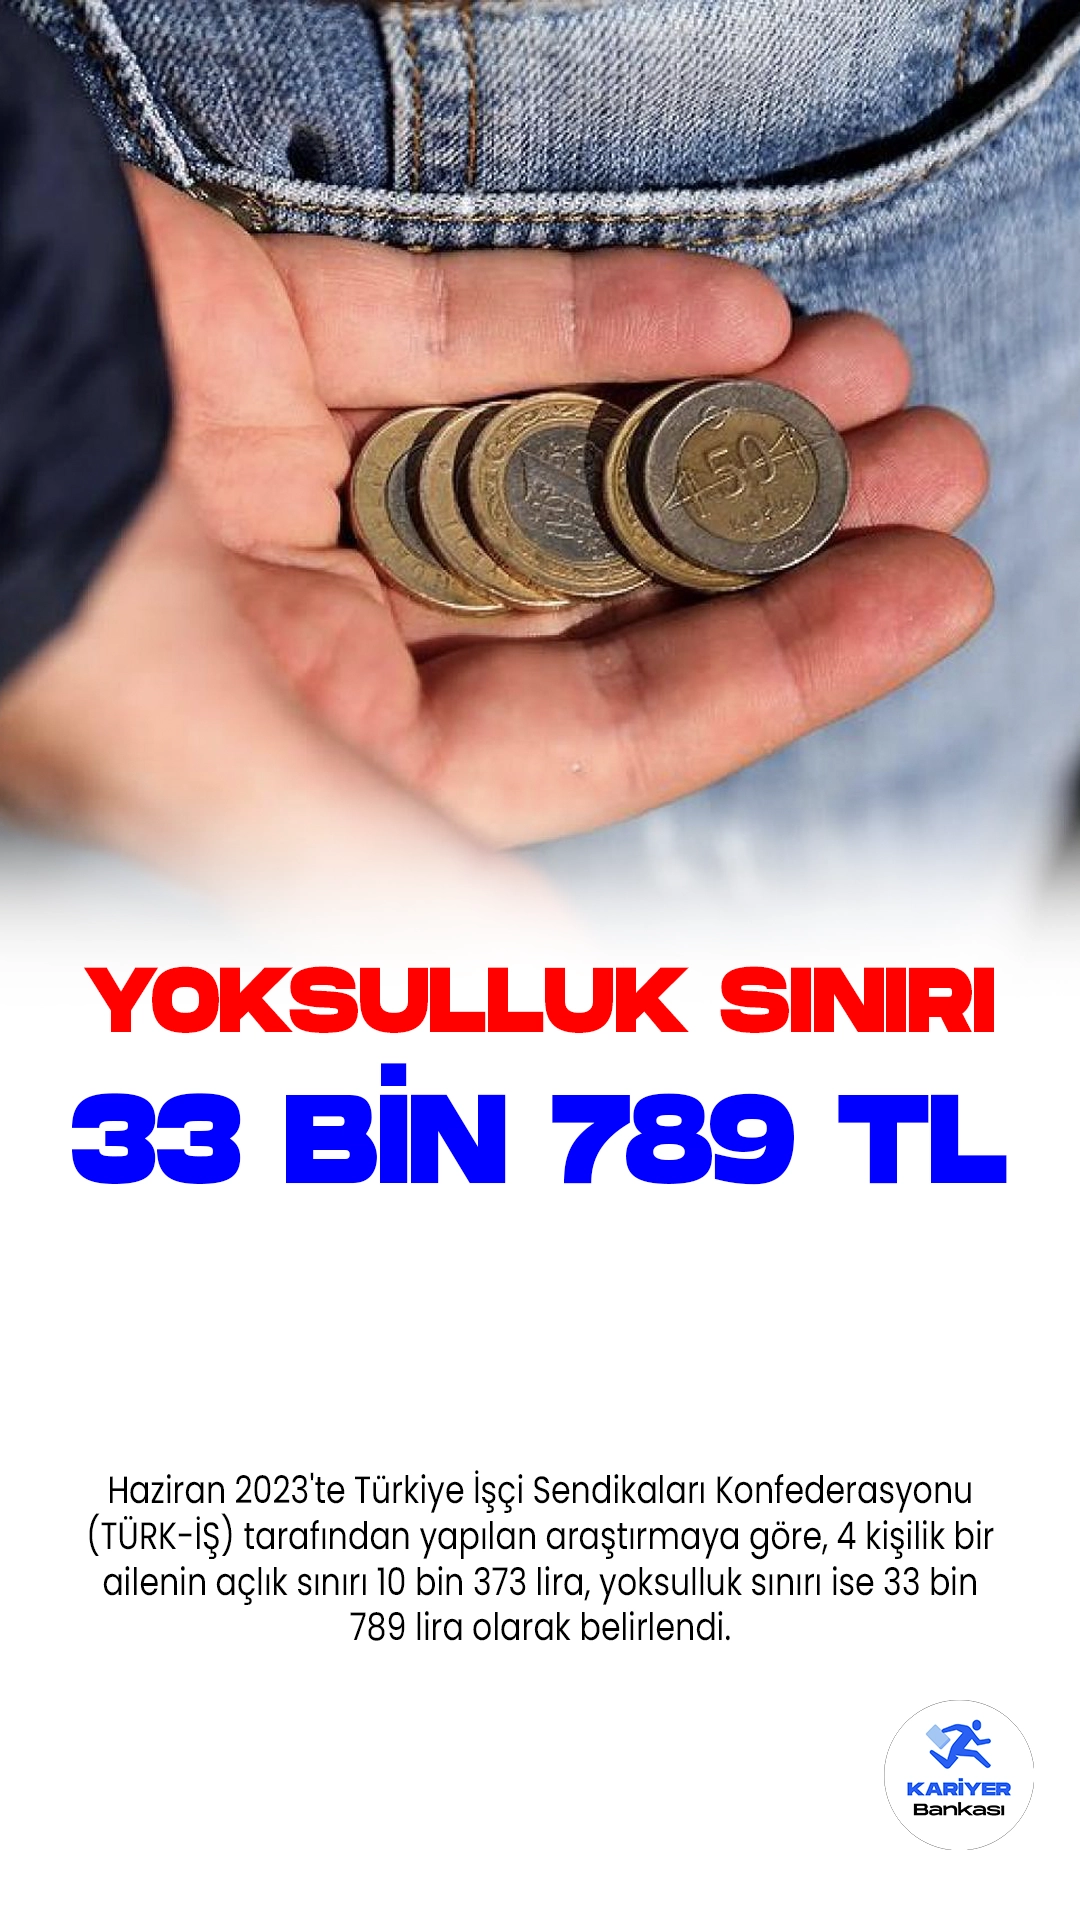 Haziran 2023'te Türkiye İşçi Sendikaları Konfederasyonu (TÜRK-İŞ) tarafından yapılan araştırmaya göre, 4 kişilik bir ailenin açlık sınırı 10 bin 373 lira, yoksulluk sınırı ise 33 bin 789 lira olarak belirlendi.